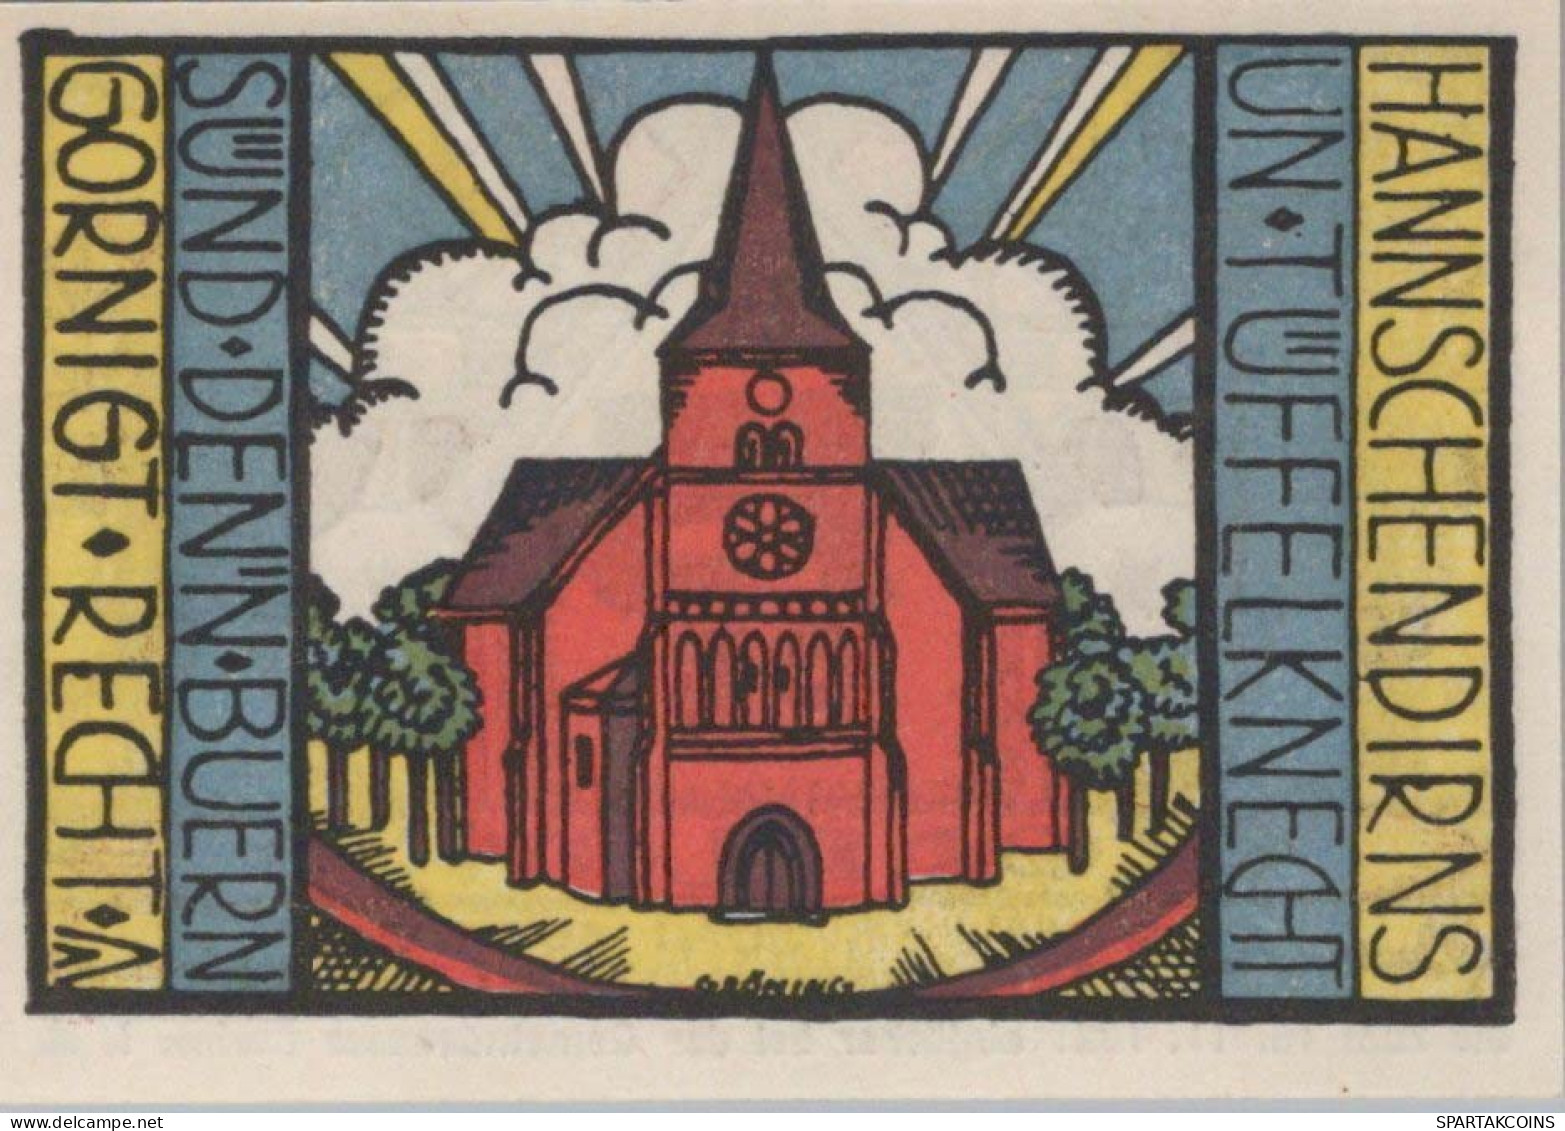 75 PFENNIG 1921 Stadt CARLOW Mecklenburg-Strelitz UNC DEUTSCHLAND Notgeld #PA378 - [11] Local Banknote Issues